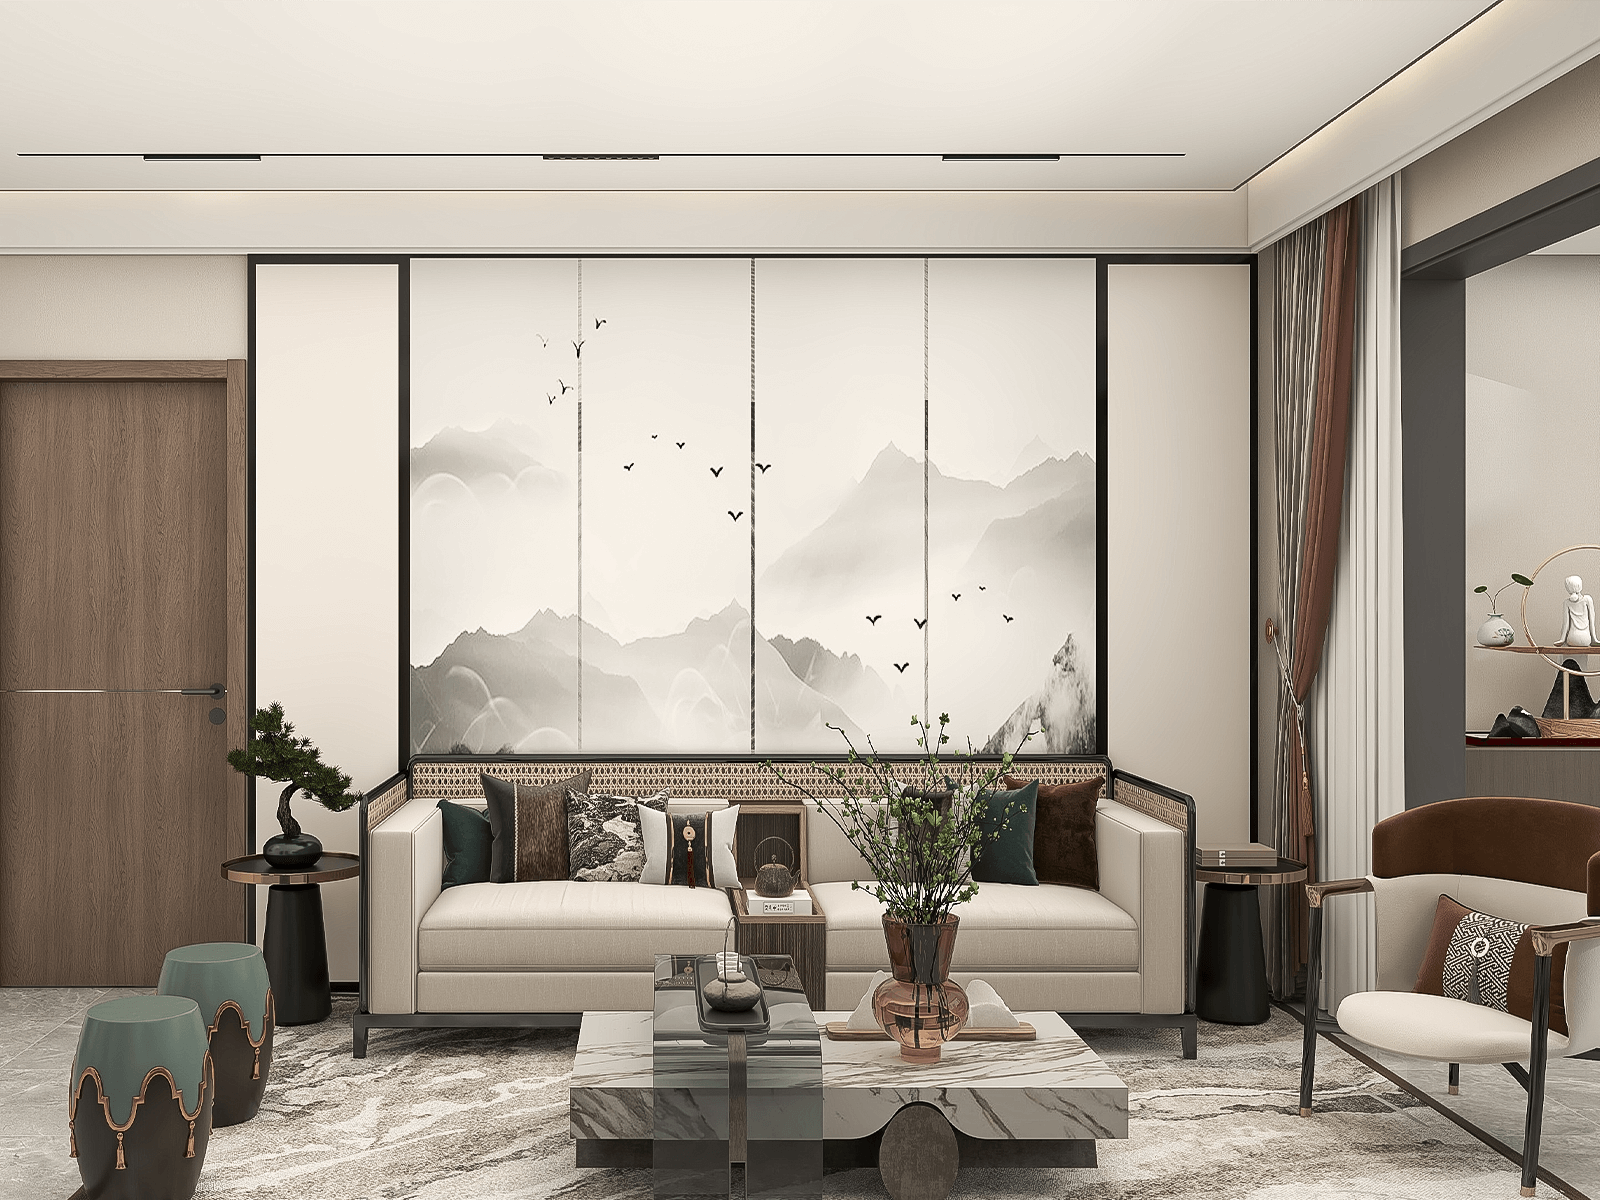 中国传统建筑领域里的对称有序，在这家的新中式客厅也体现得淋漓尽致。客厅背景墙为水墨山水，高脚宽的中式沙发、座椅都与背景元素相关。